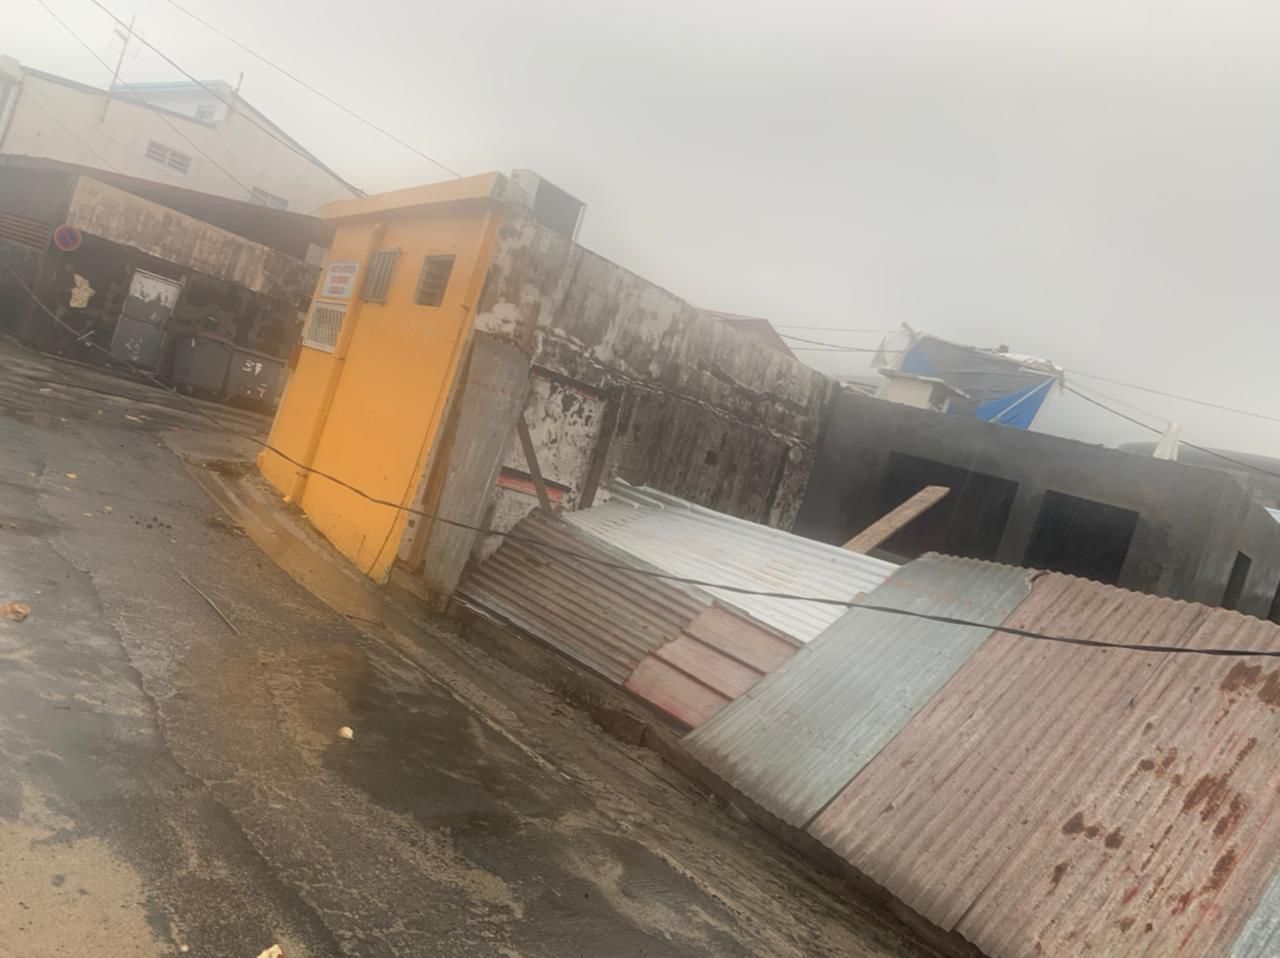     [PHOTOS] La pluie fait des dégâts au bourg de Ste Luce

